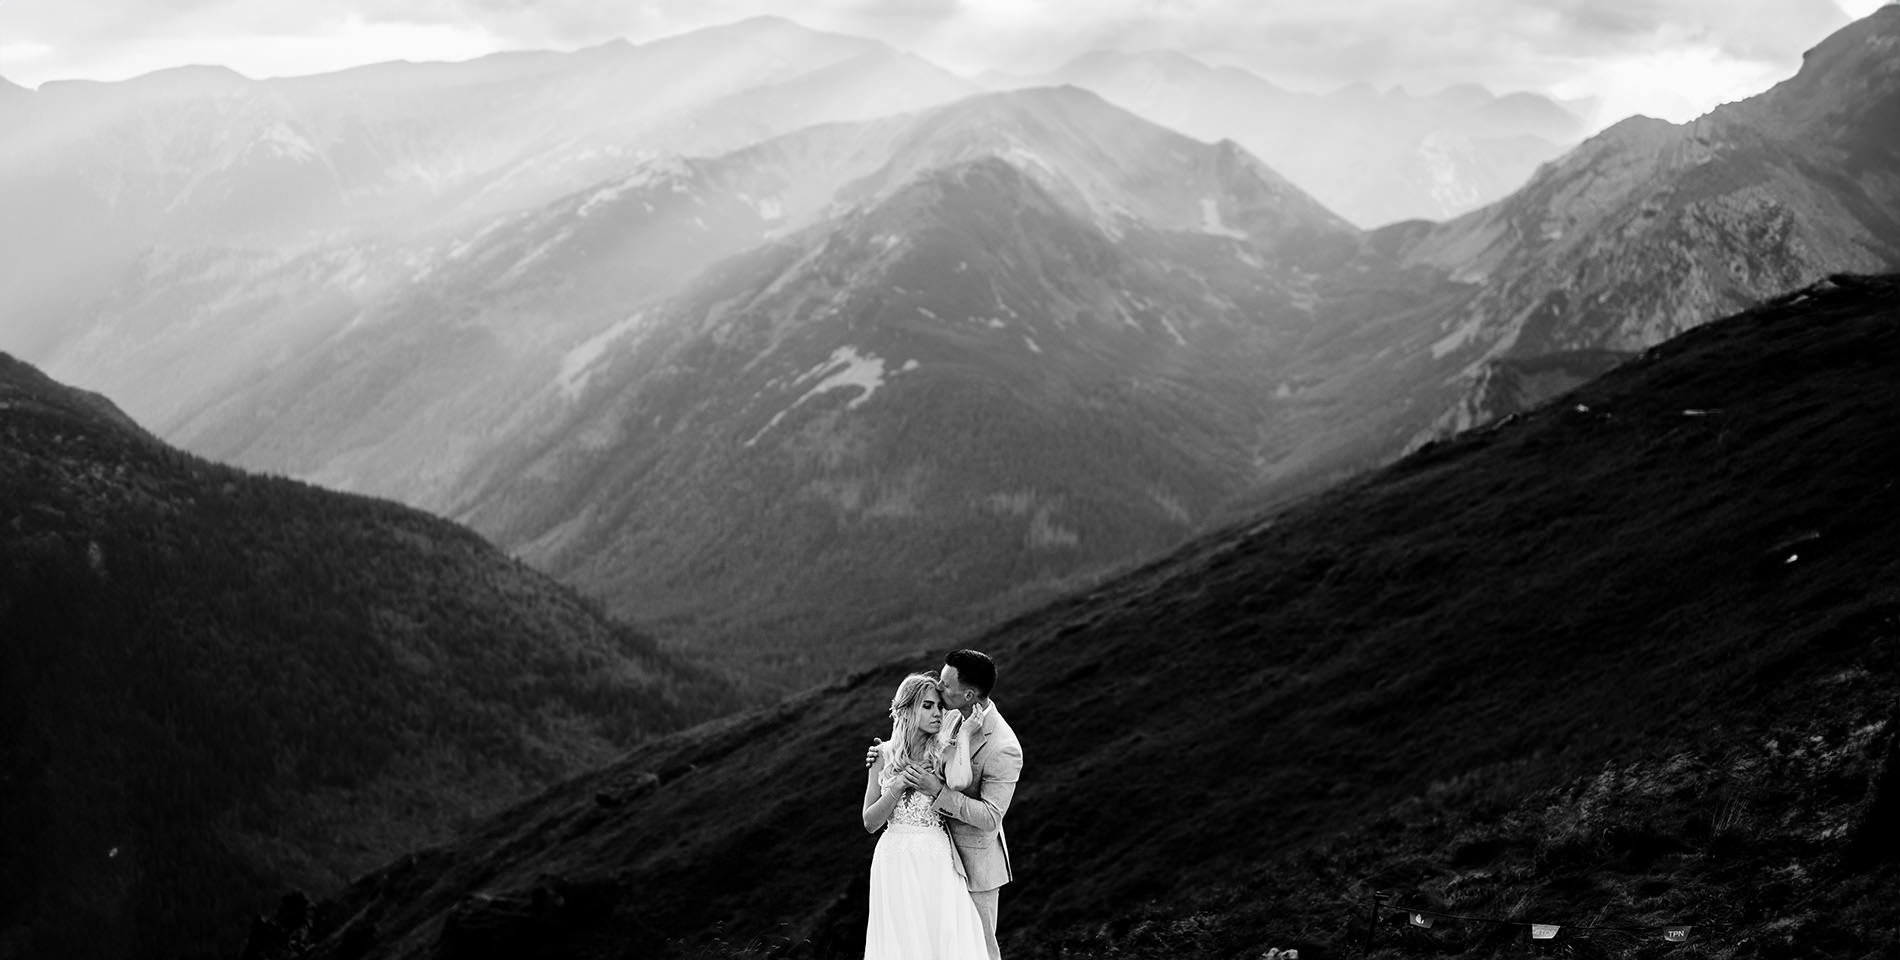 Sesja ślubna w górach
Plener ślubny w Tatrach